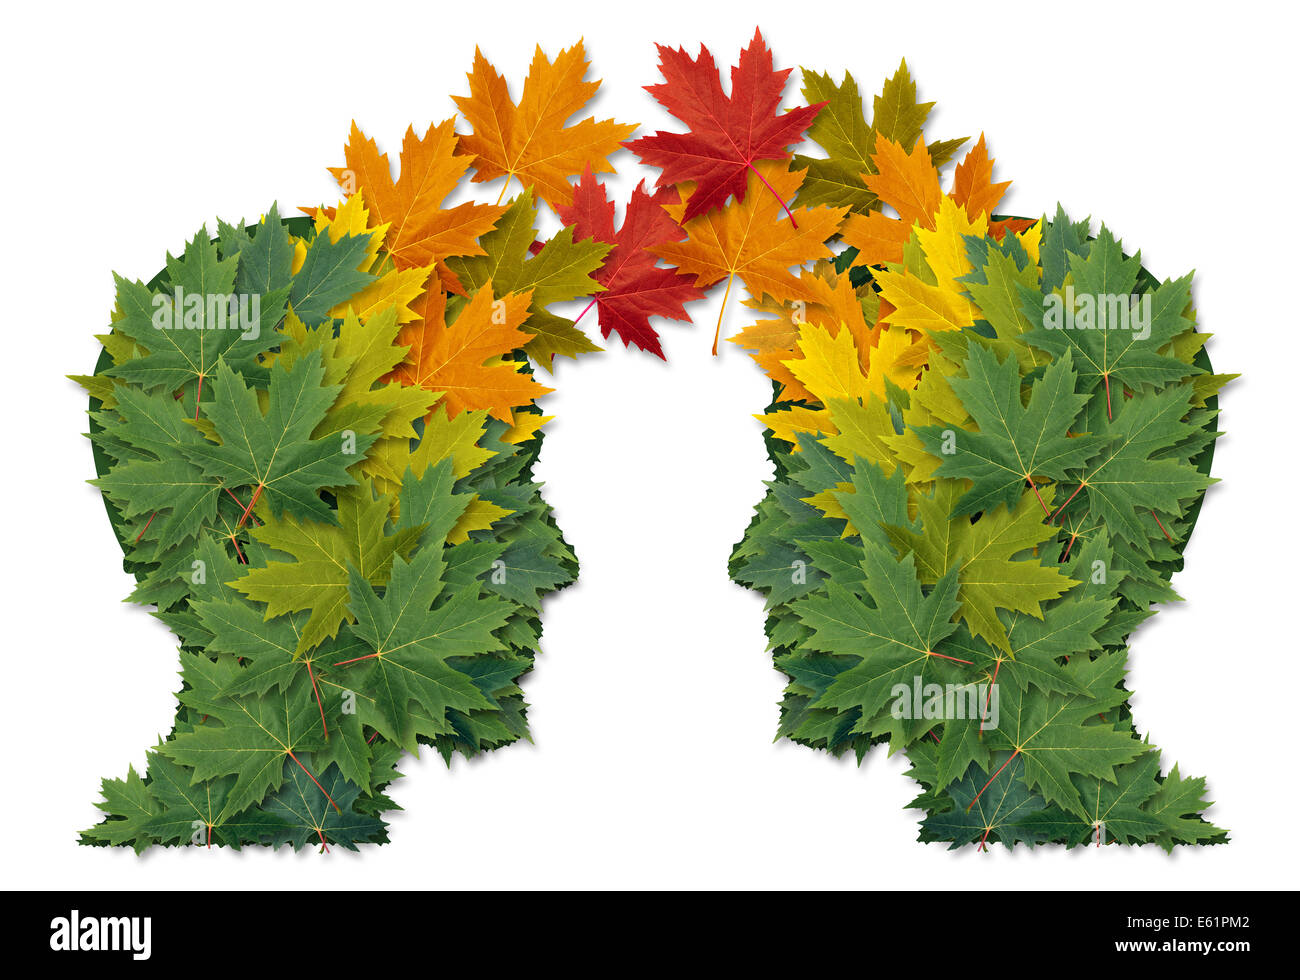 Échange de communication d'affaires en partenariat et travail d'équipe comme symbole de deux têtes humaines faites de feuilles d'arbres reliés ensemble comme un symbole de relations réseau. et la nature de la coopération. Banque D'Images